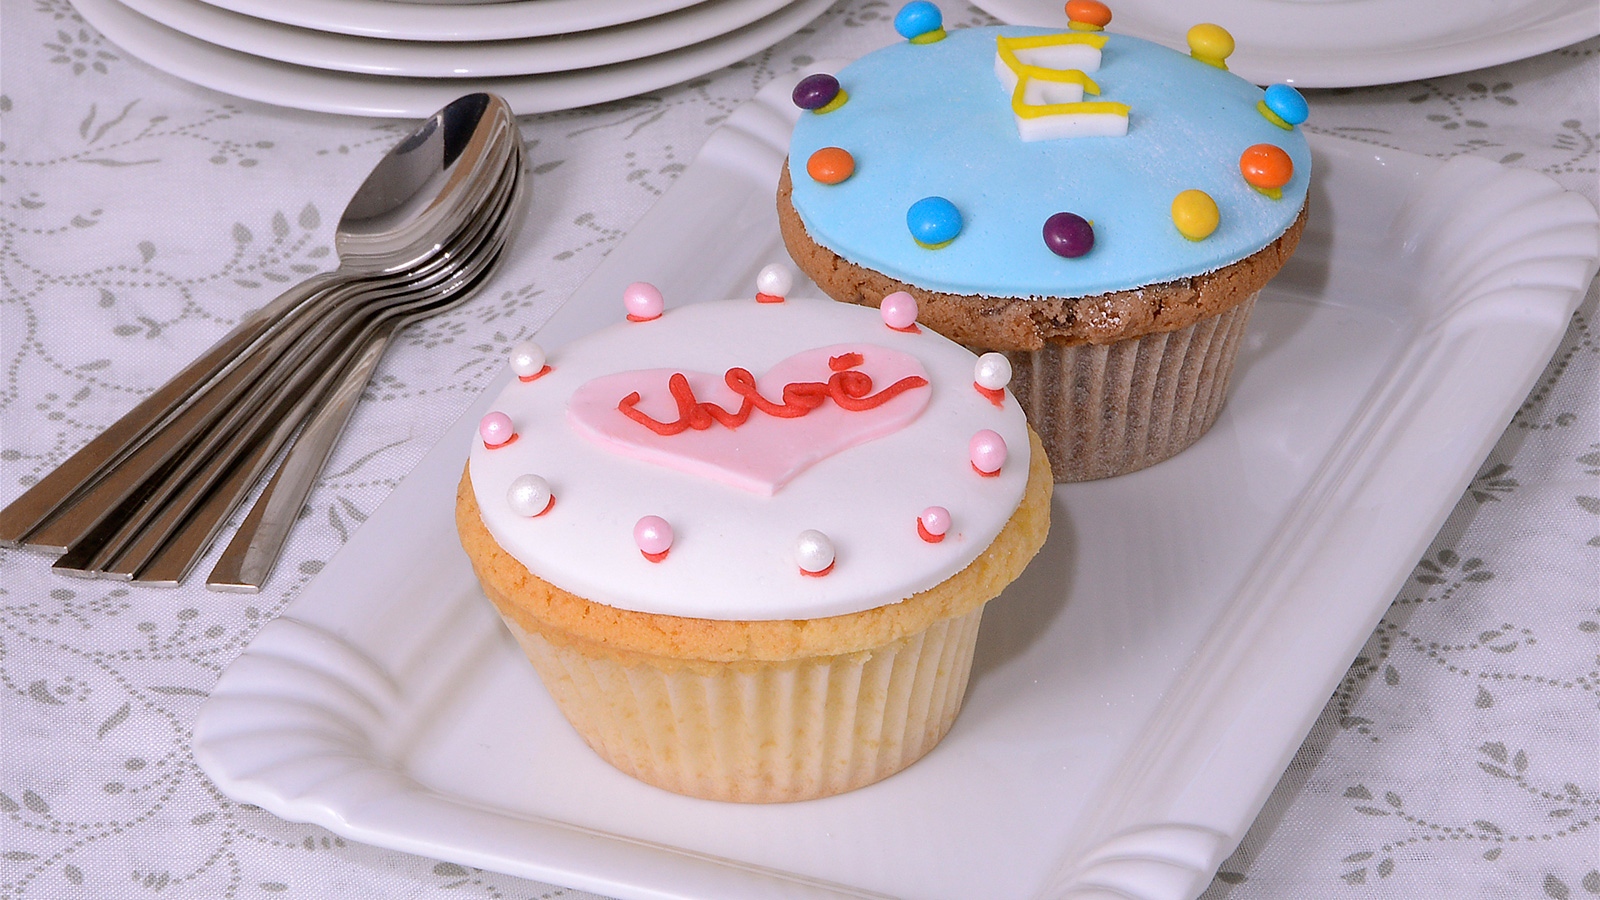 Cupcake con fondant (Cupcakes) - Amanda Laporte - Receta - Canal Cocina